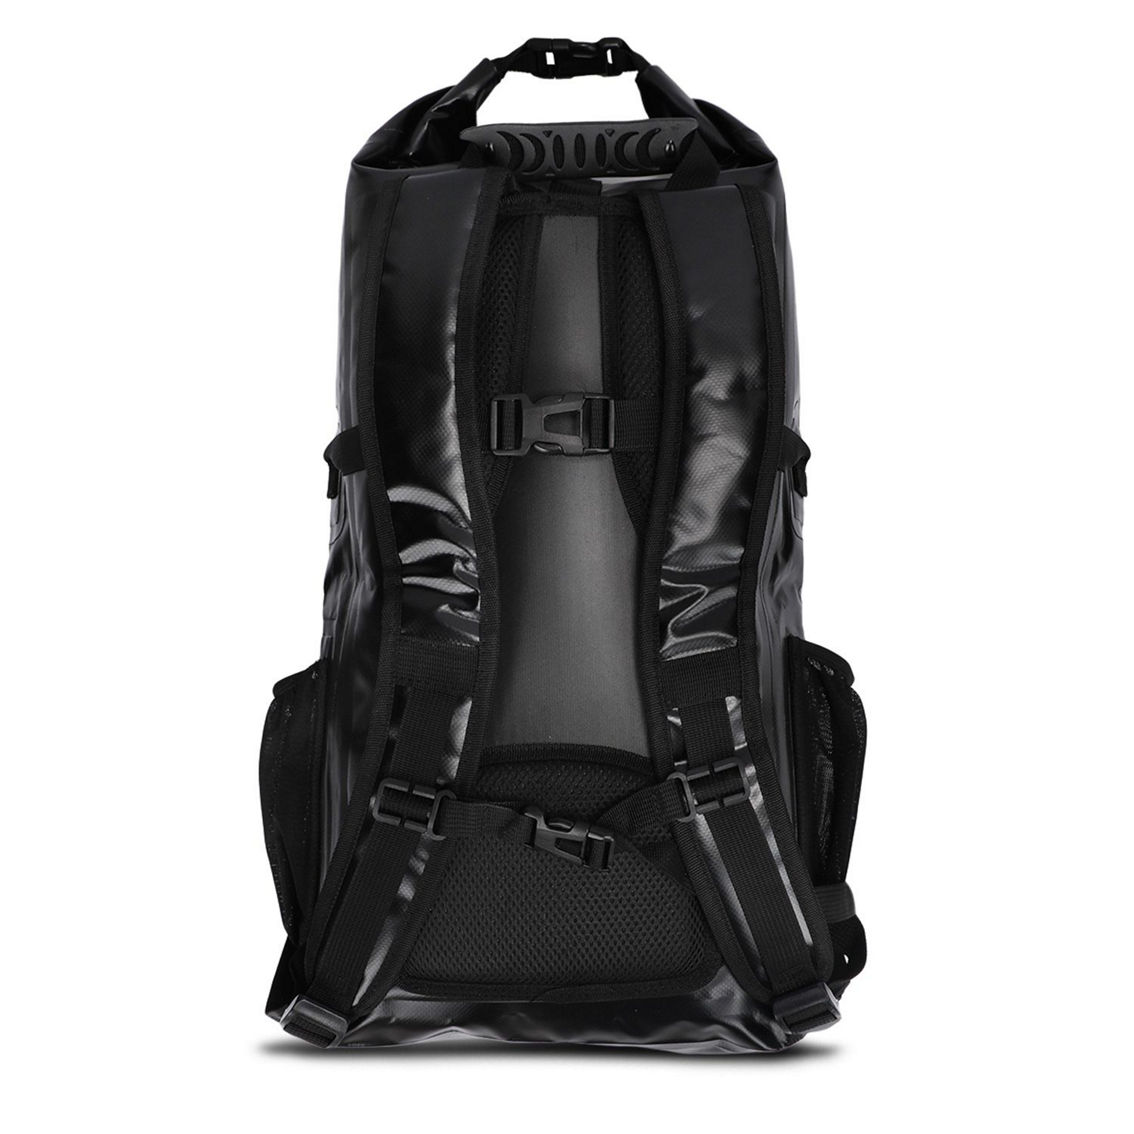 Huntington 20L Dry Bag Backpack - Image 2 of 5